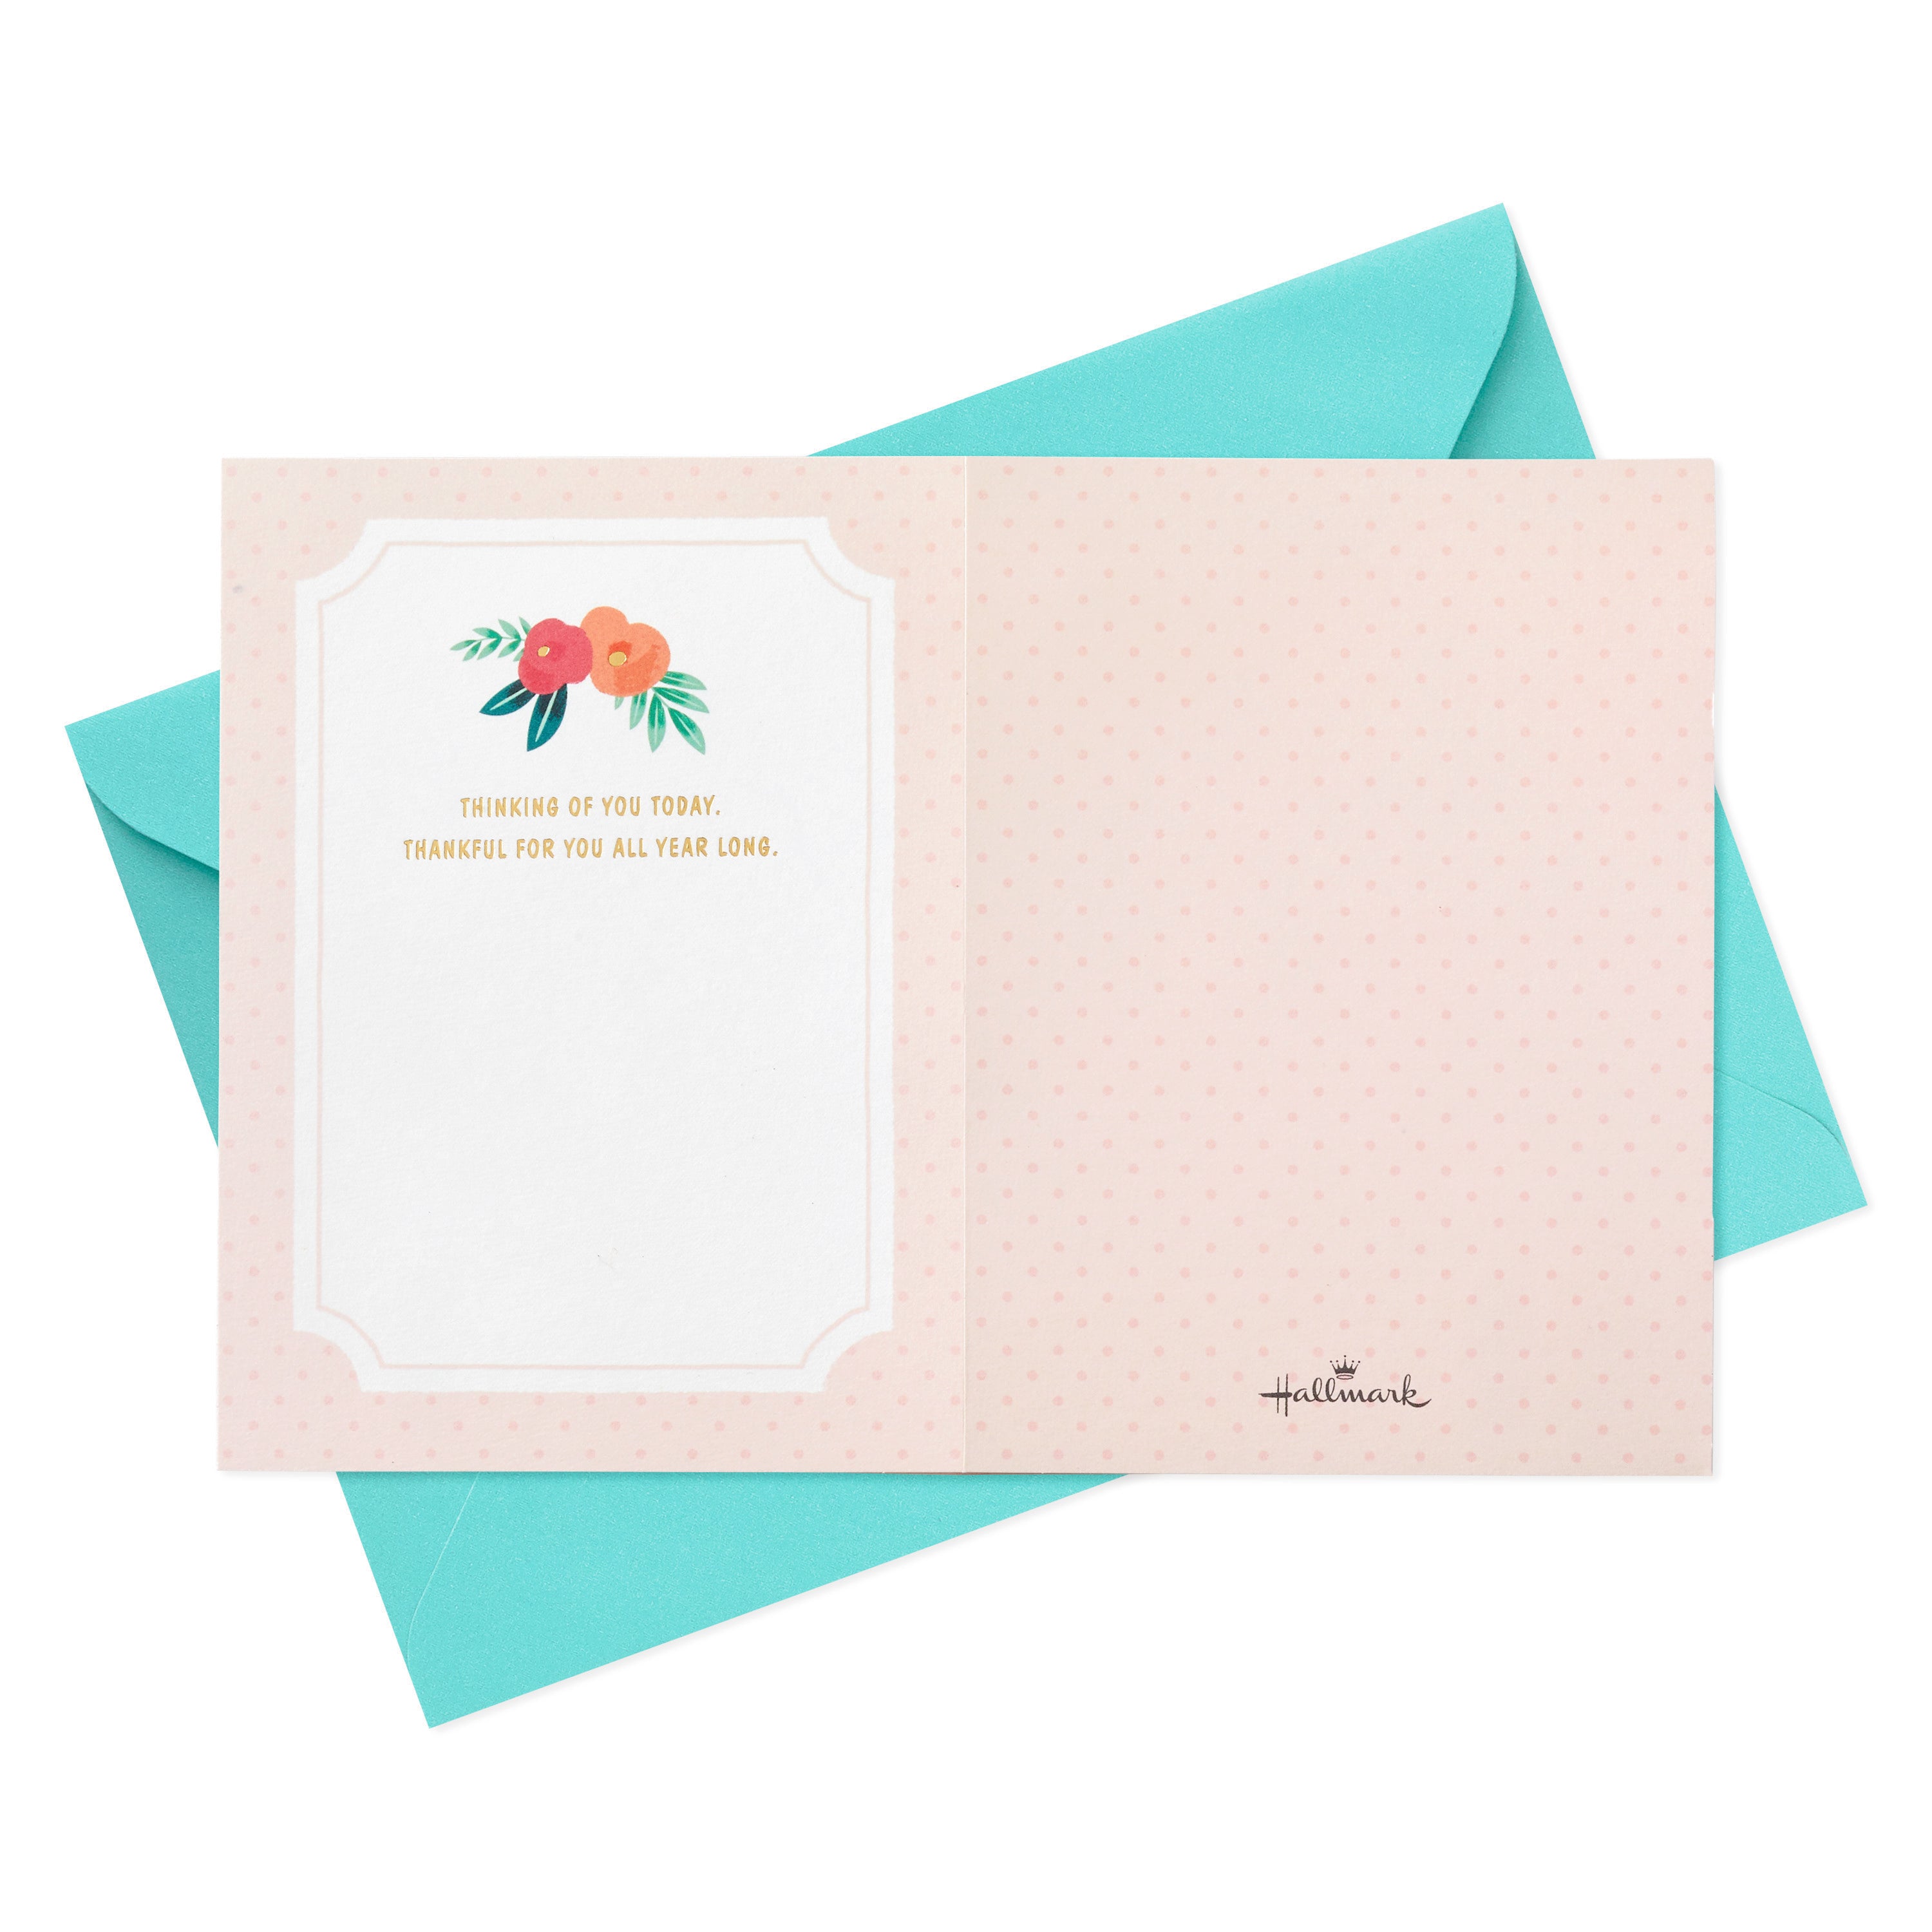 Hallmark Paper Wonder Pop Up Birthday Card for Women (Flower Garland)